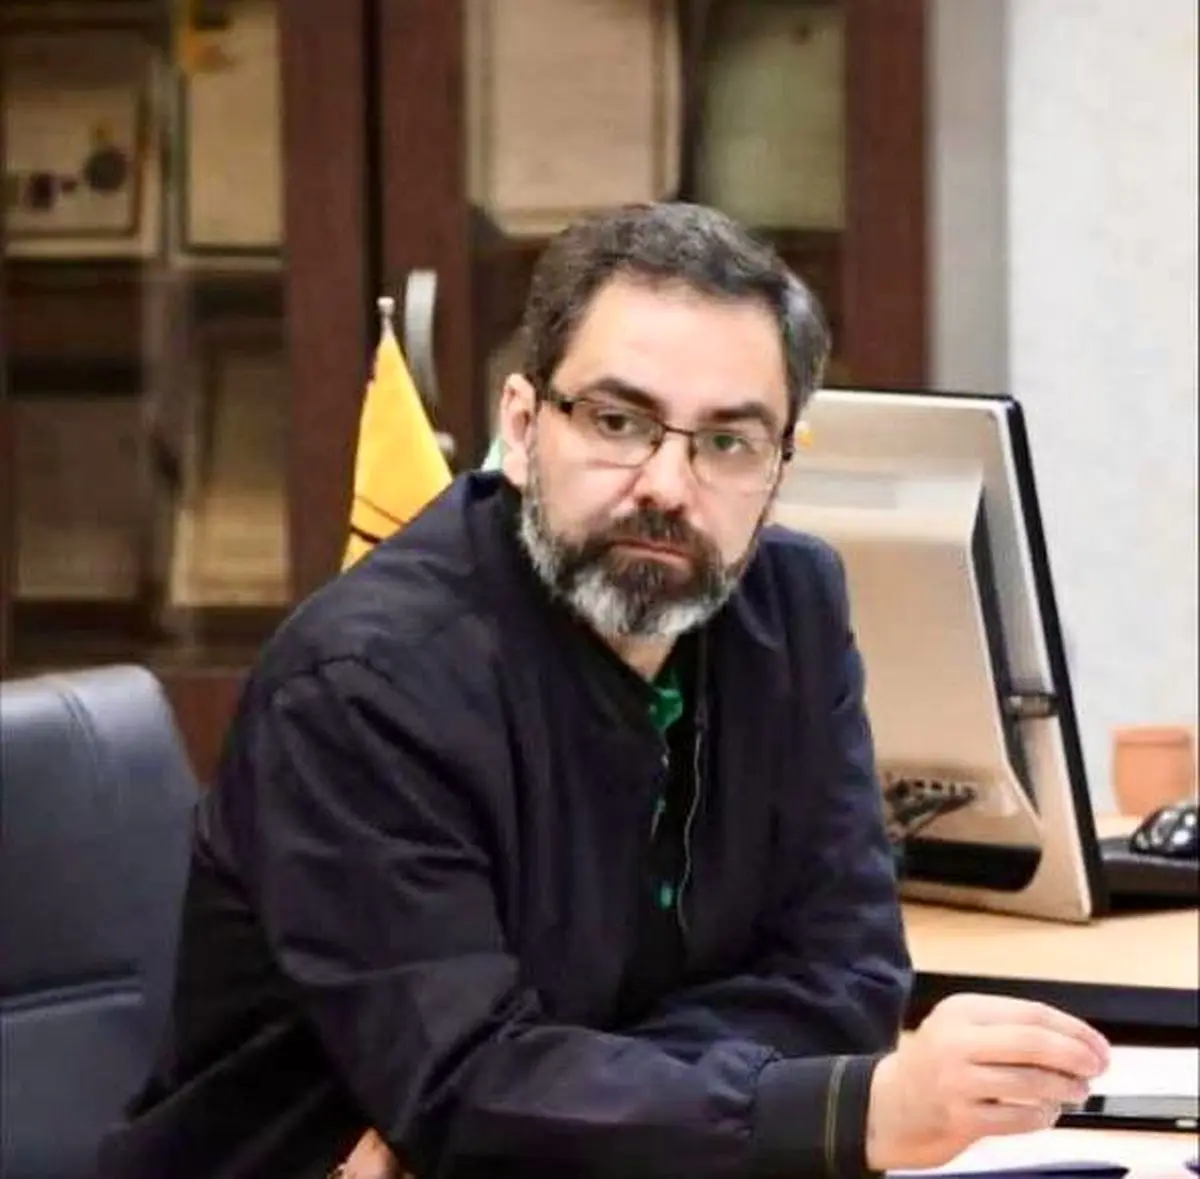 انتصاب محسن محمدیان به سمت "مدیر روابط عمومی" سازمان حمل و نقل و ترافیک شهر تهران 

